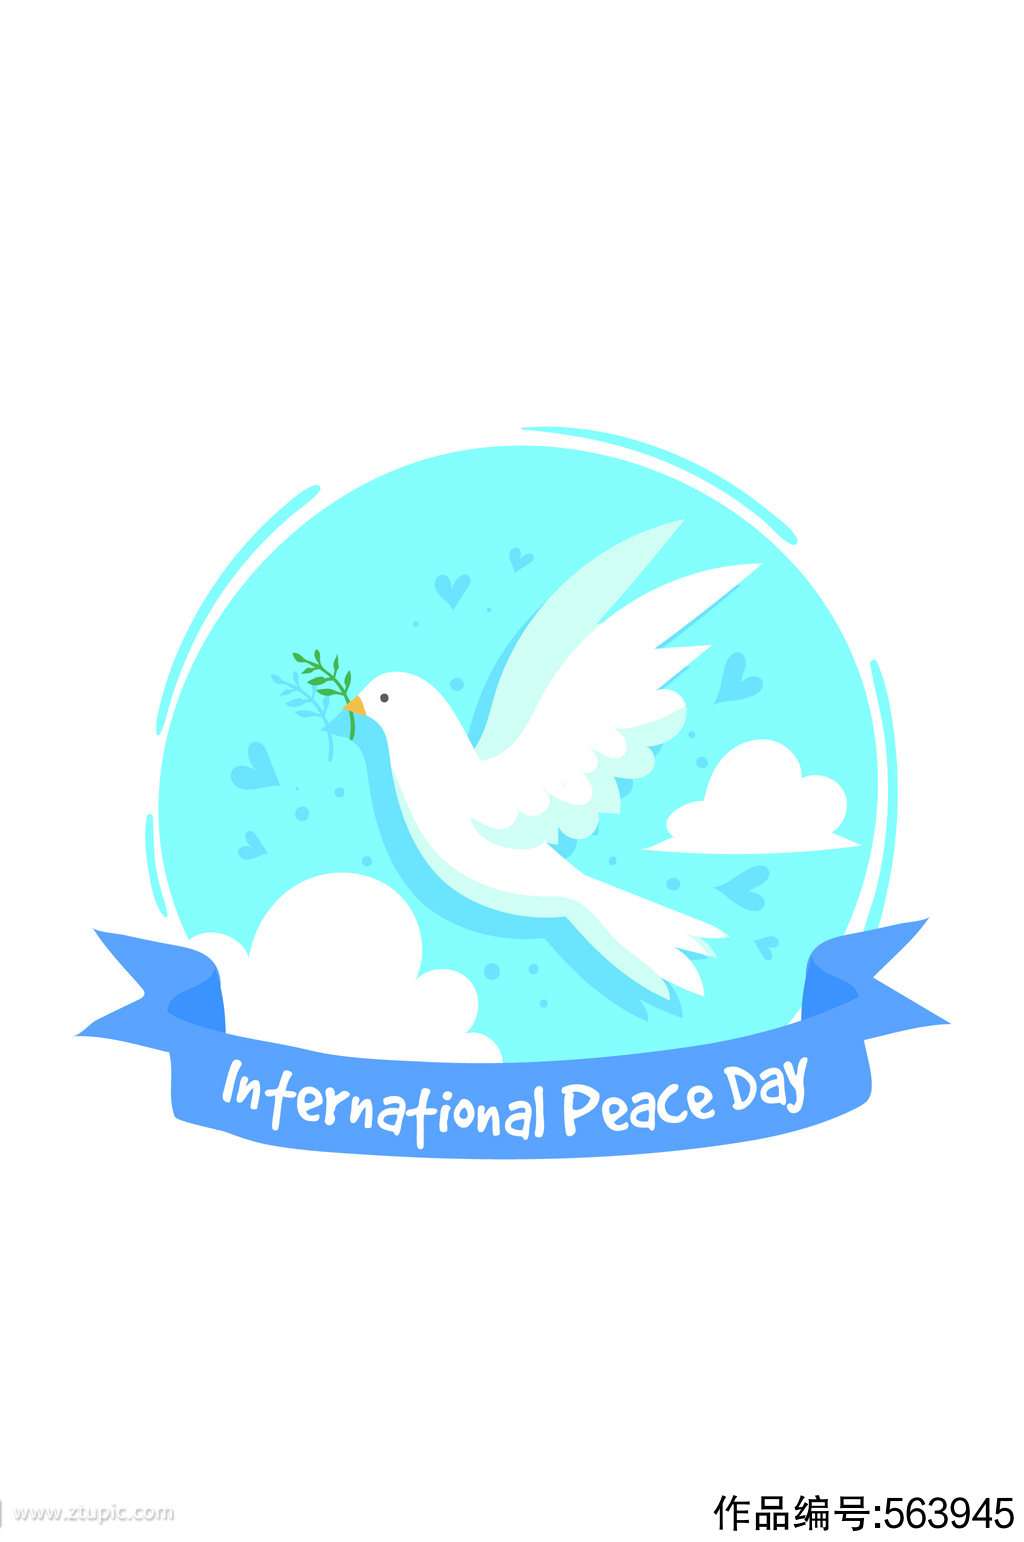 创意国际和平日白鸽矢量素材